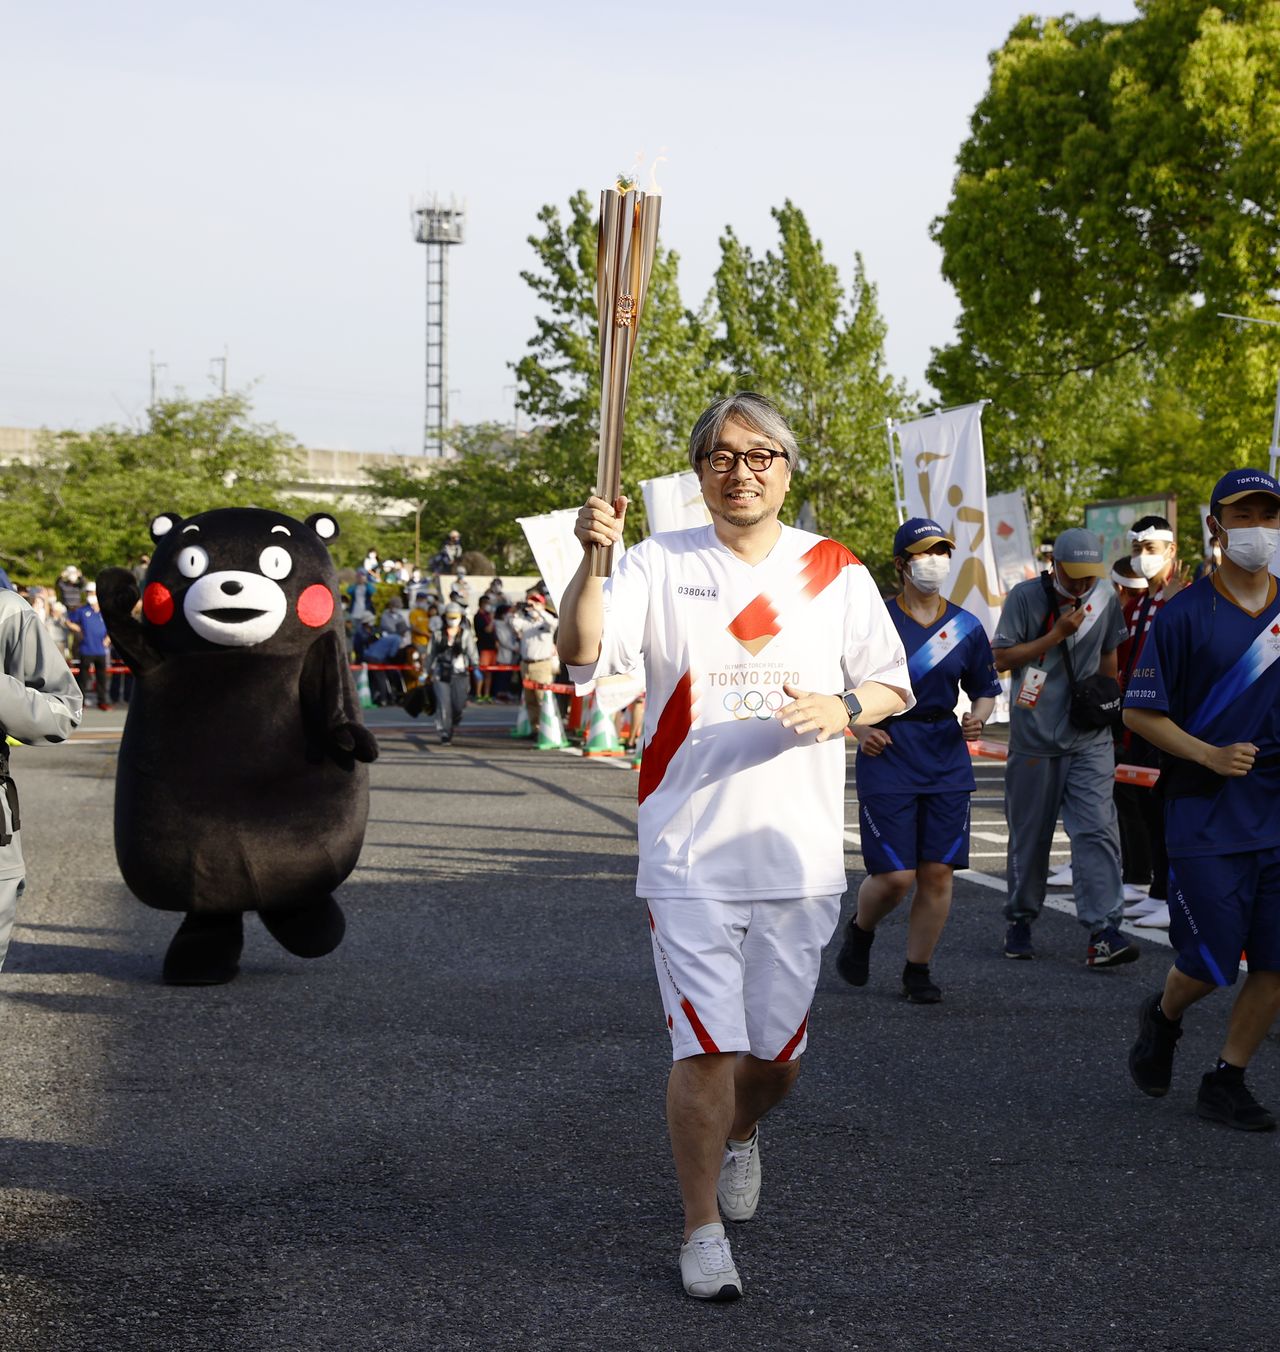 Koyama Kundō, guionista de televisión y creador de Kumamon, participando en el relevo de la antorcha de los Juegos Olímpicos de Tokio. Kumamon, en el fondo a la izquierda, corre detrás de él. 5 de mayo de 2021, ciudad de Udo, prefectura de Kumamoto. (Jiji) 